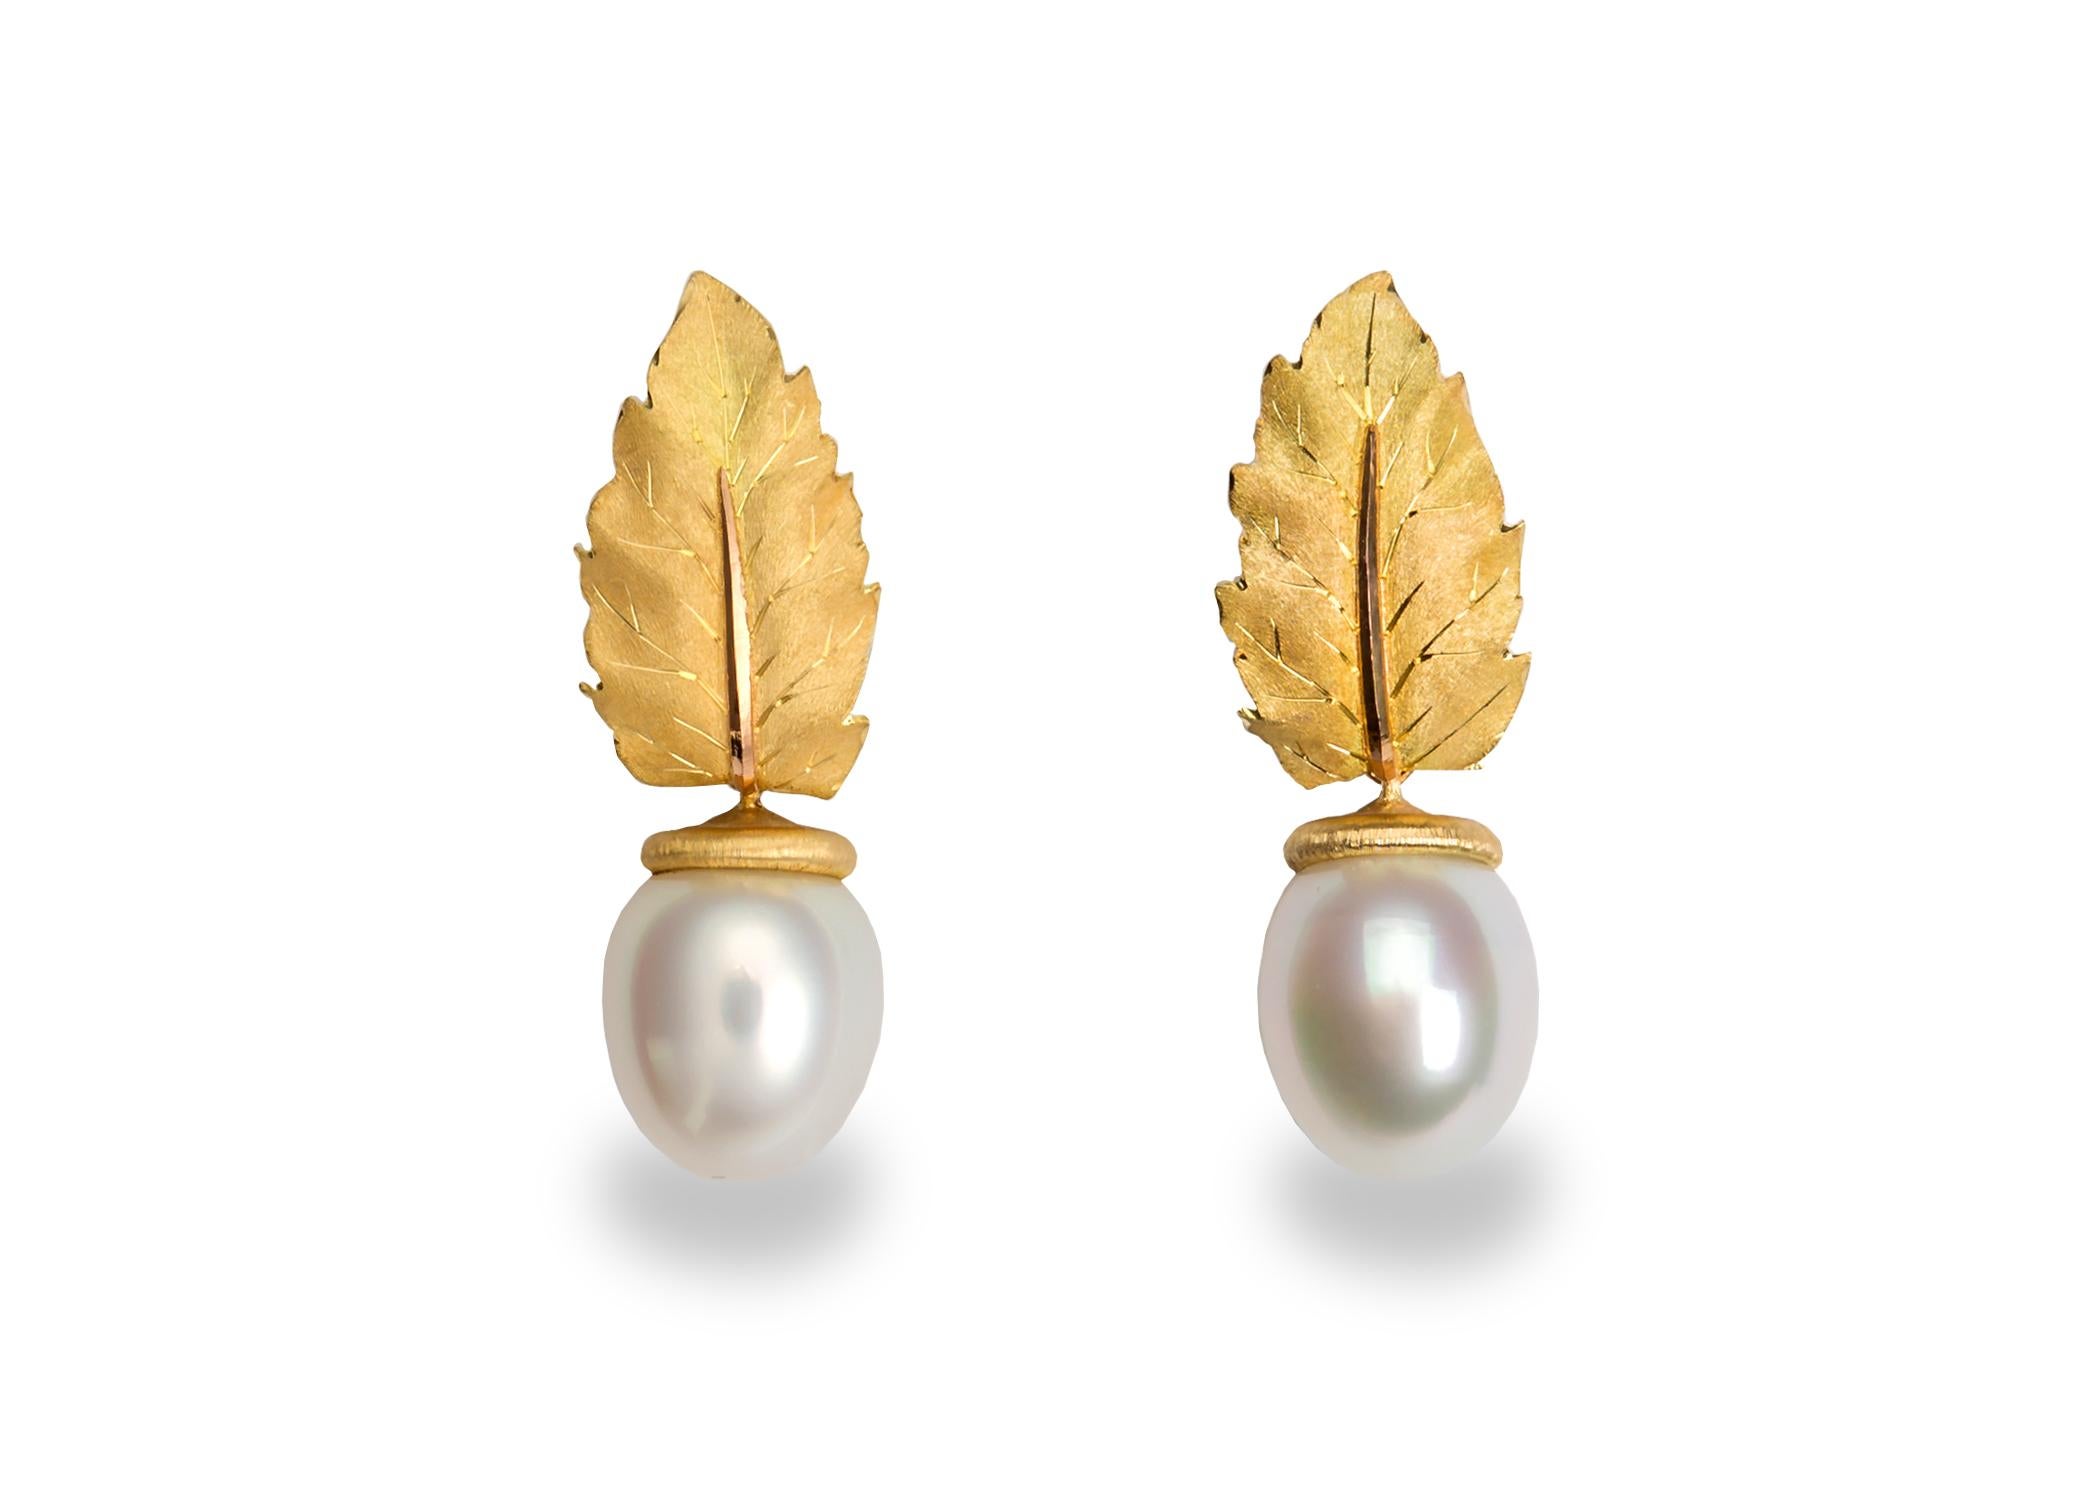 buccellati pearl earrings